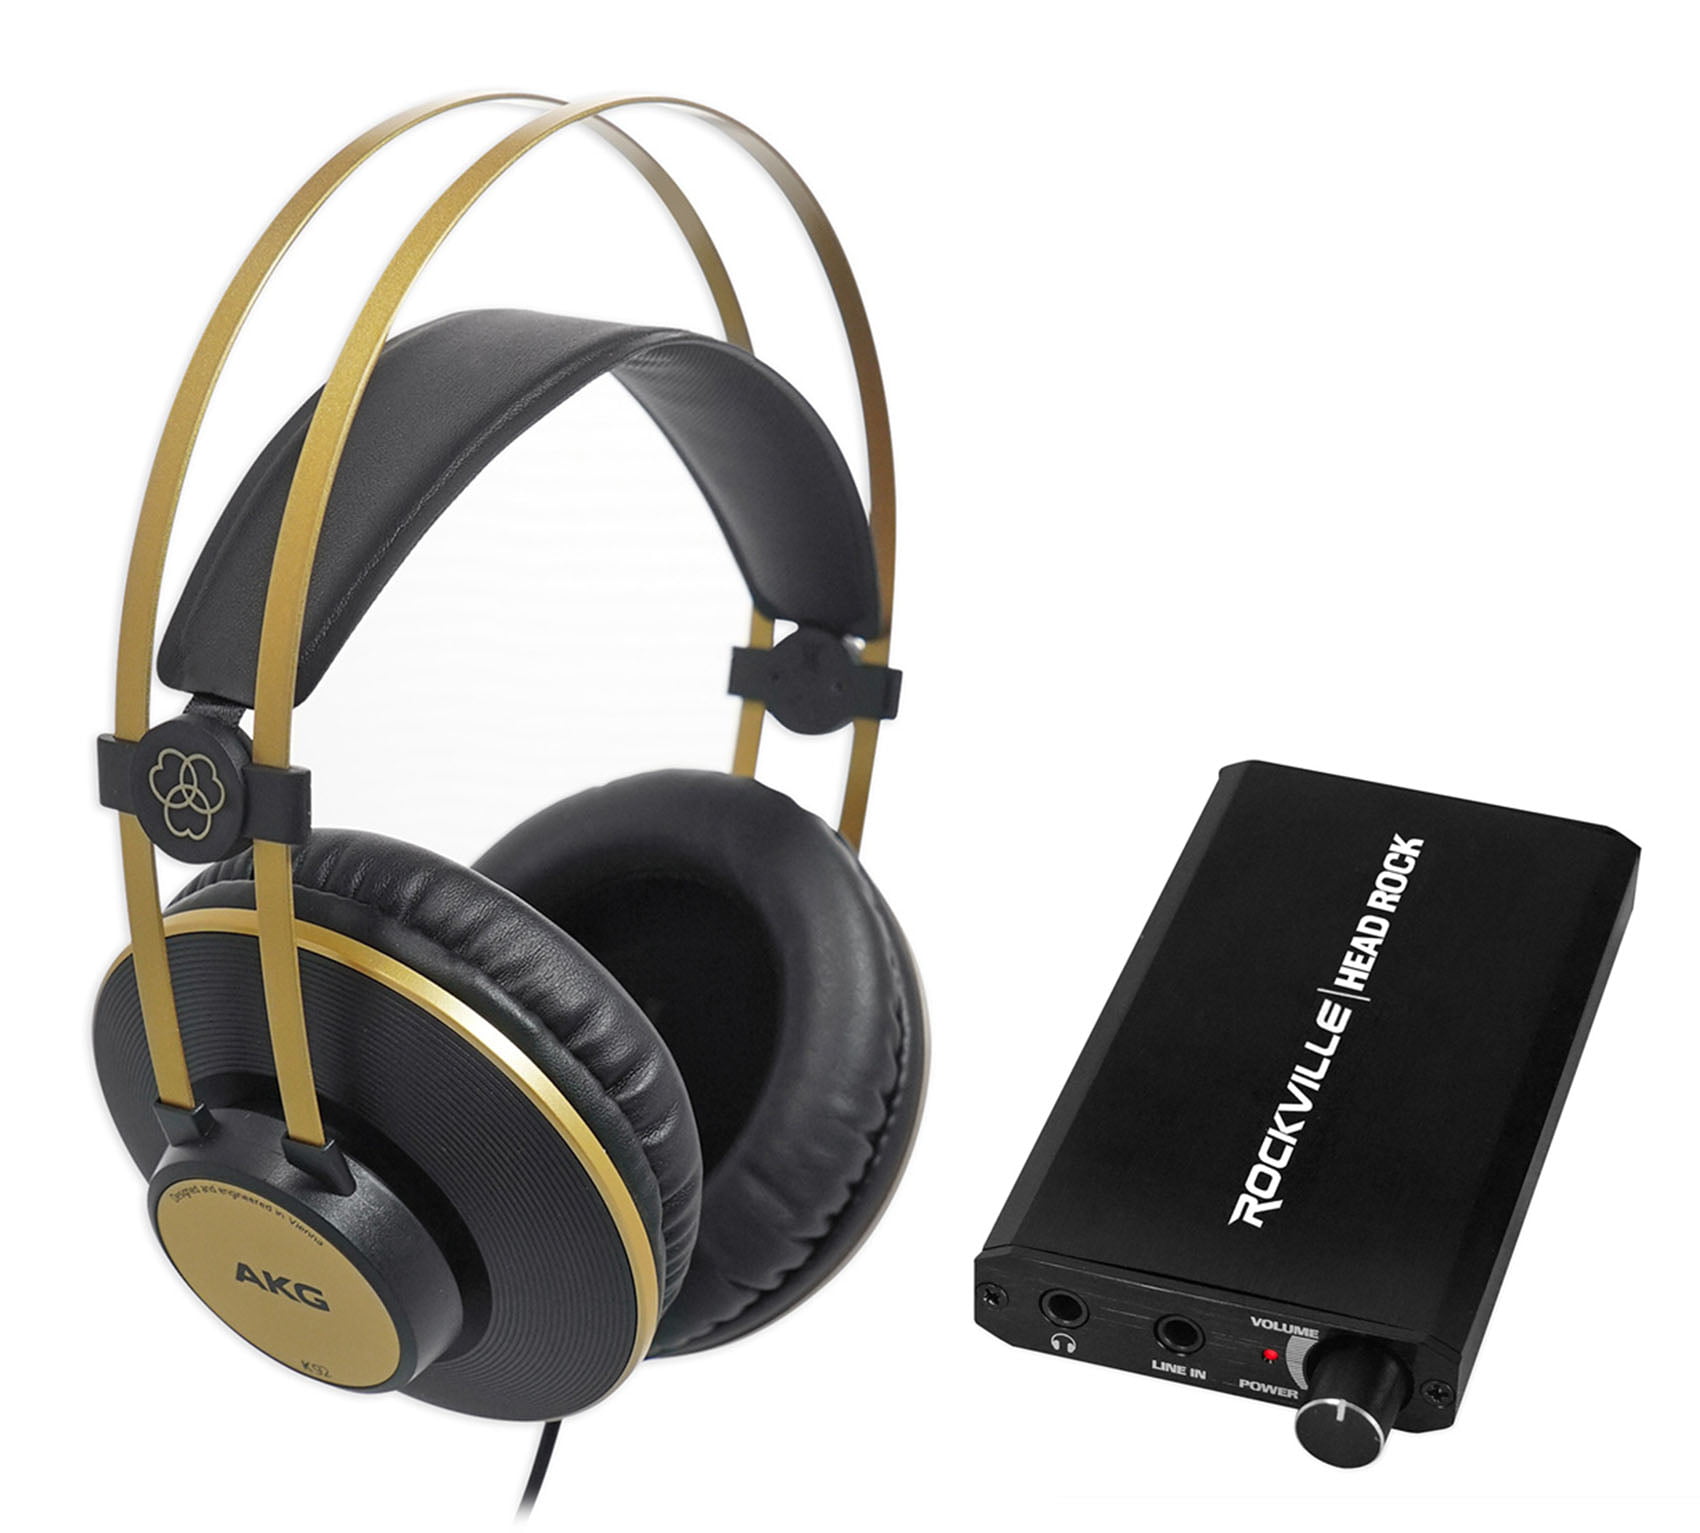 Review: AKG K52 Studio Monitor Headphones